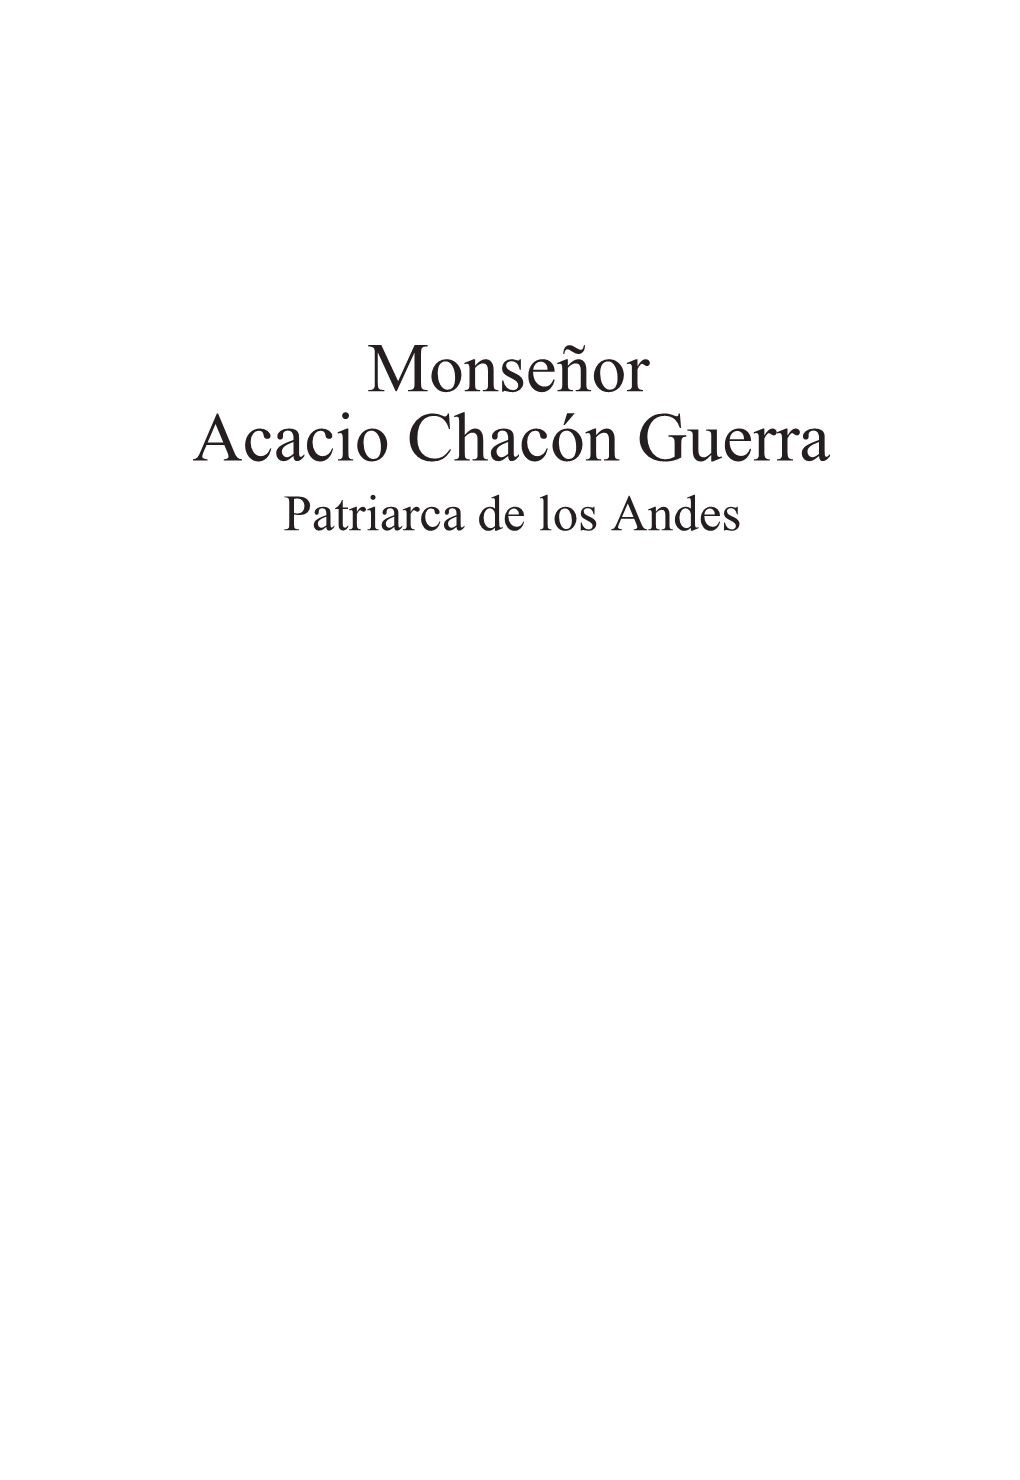 Monseñor Acacio Chacón Guerra Patriarca De Los Andes